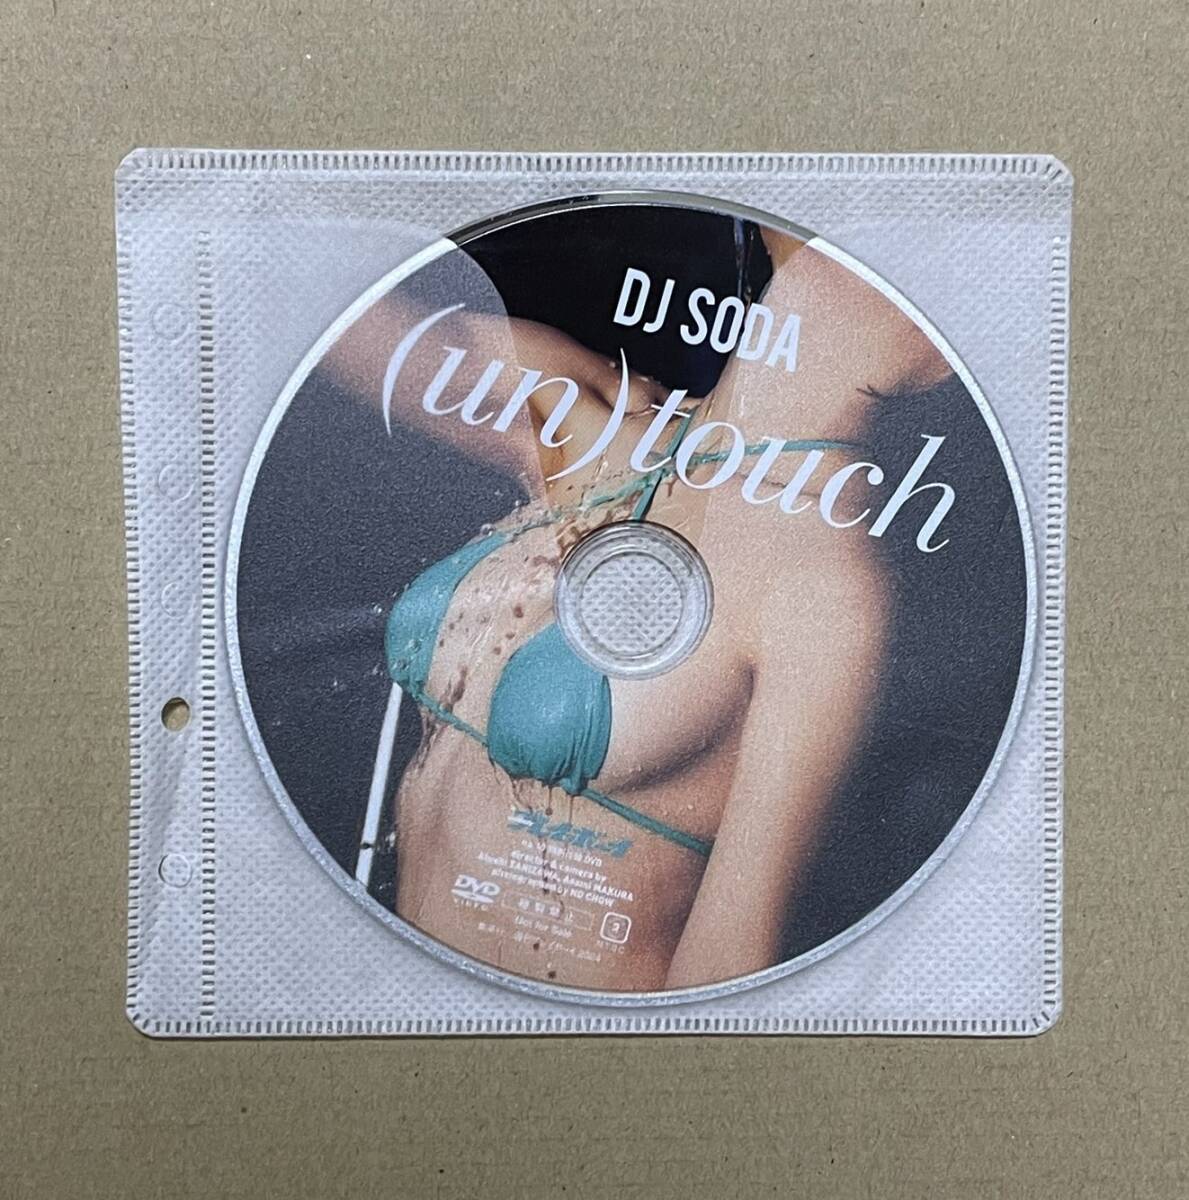 [DVD диск только ]DJ SODA еженедельный Play Boy дополнение DVD 38 минут еженедельный Play Boy No.10 2024 год 2 месяц 19 день * несколько включение в покупку возможность 